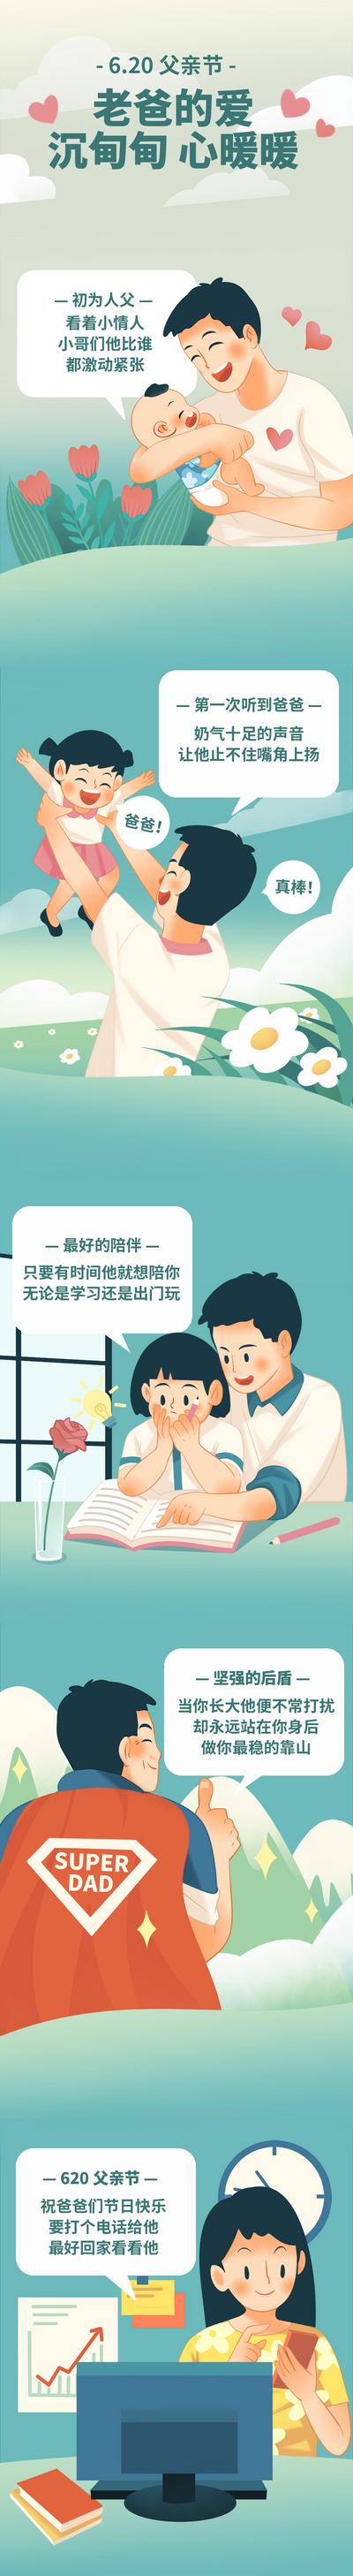 南门网 广告 海报 节日 父亲节 长图 推文 温馨 活动 关爱 暖心